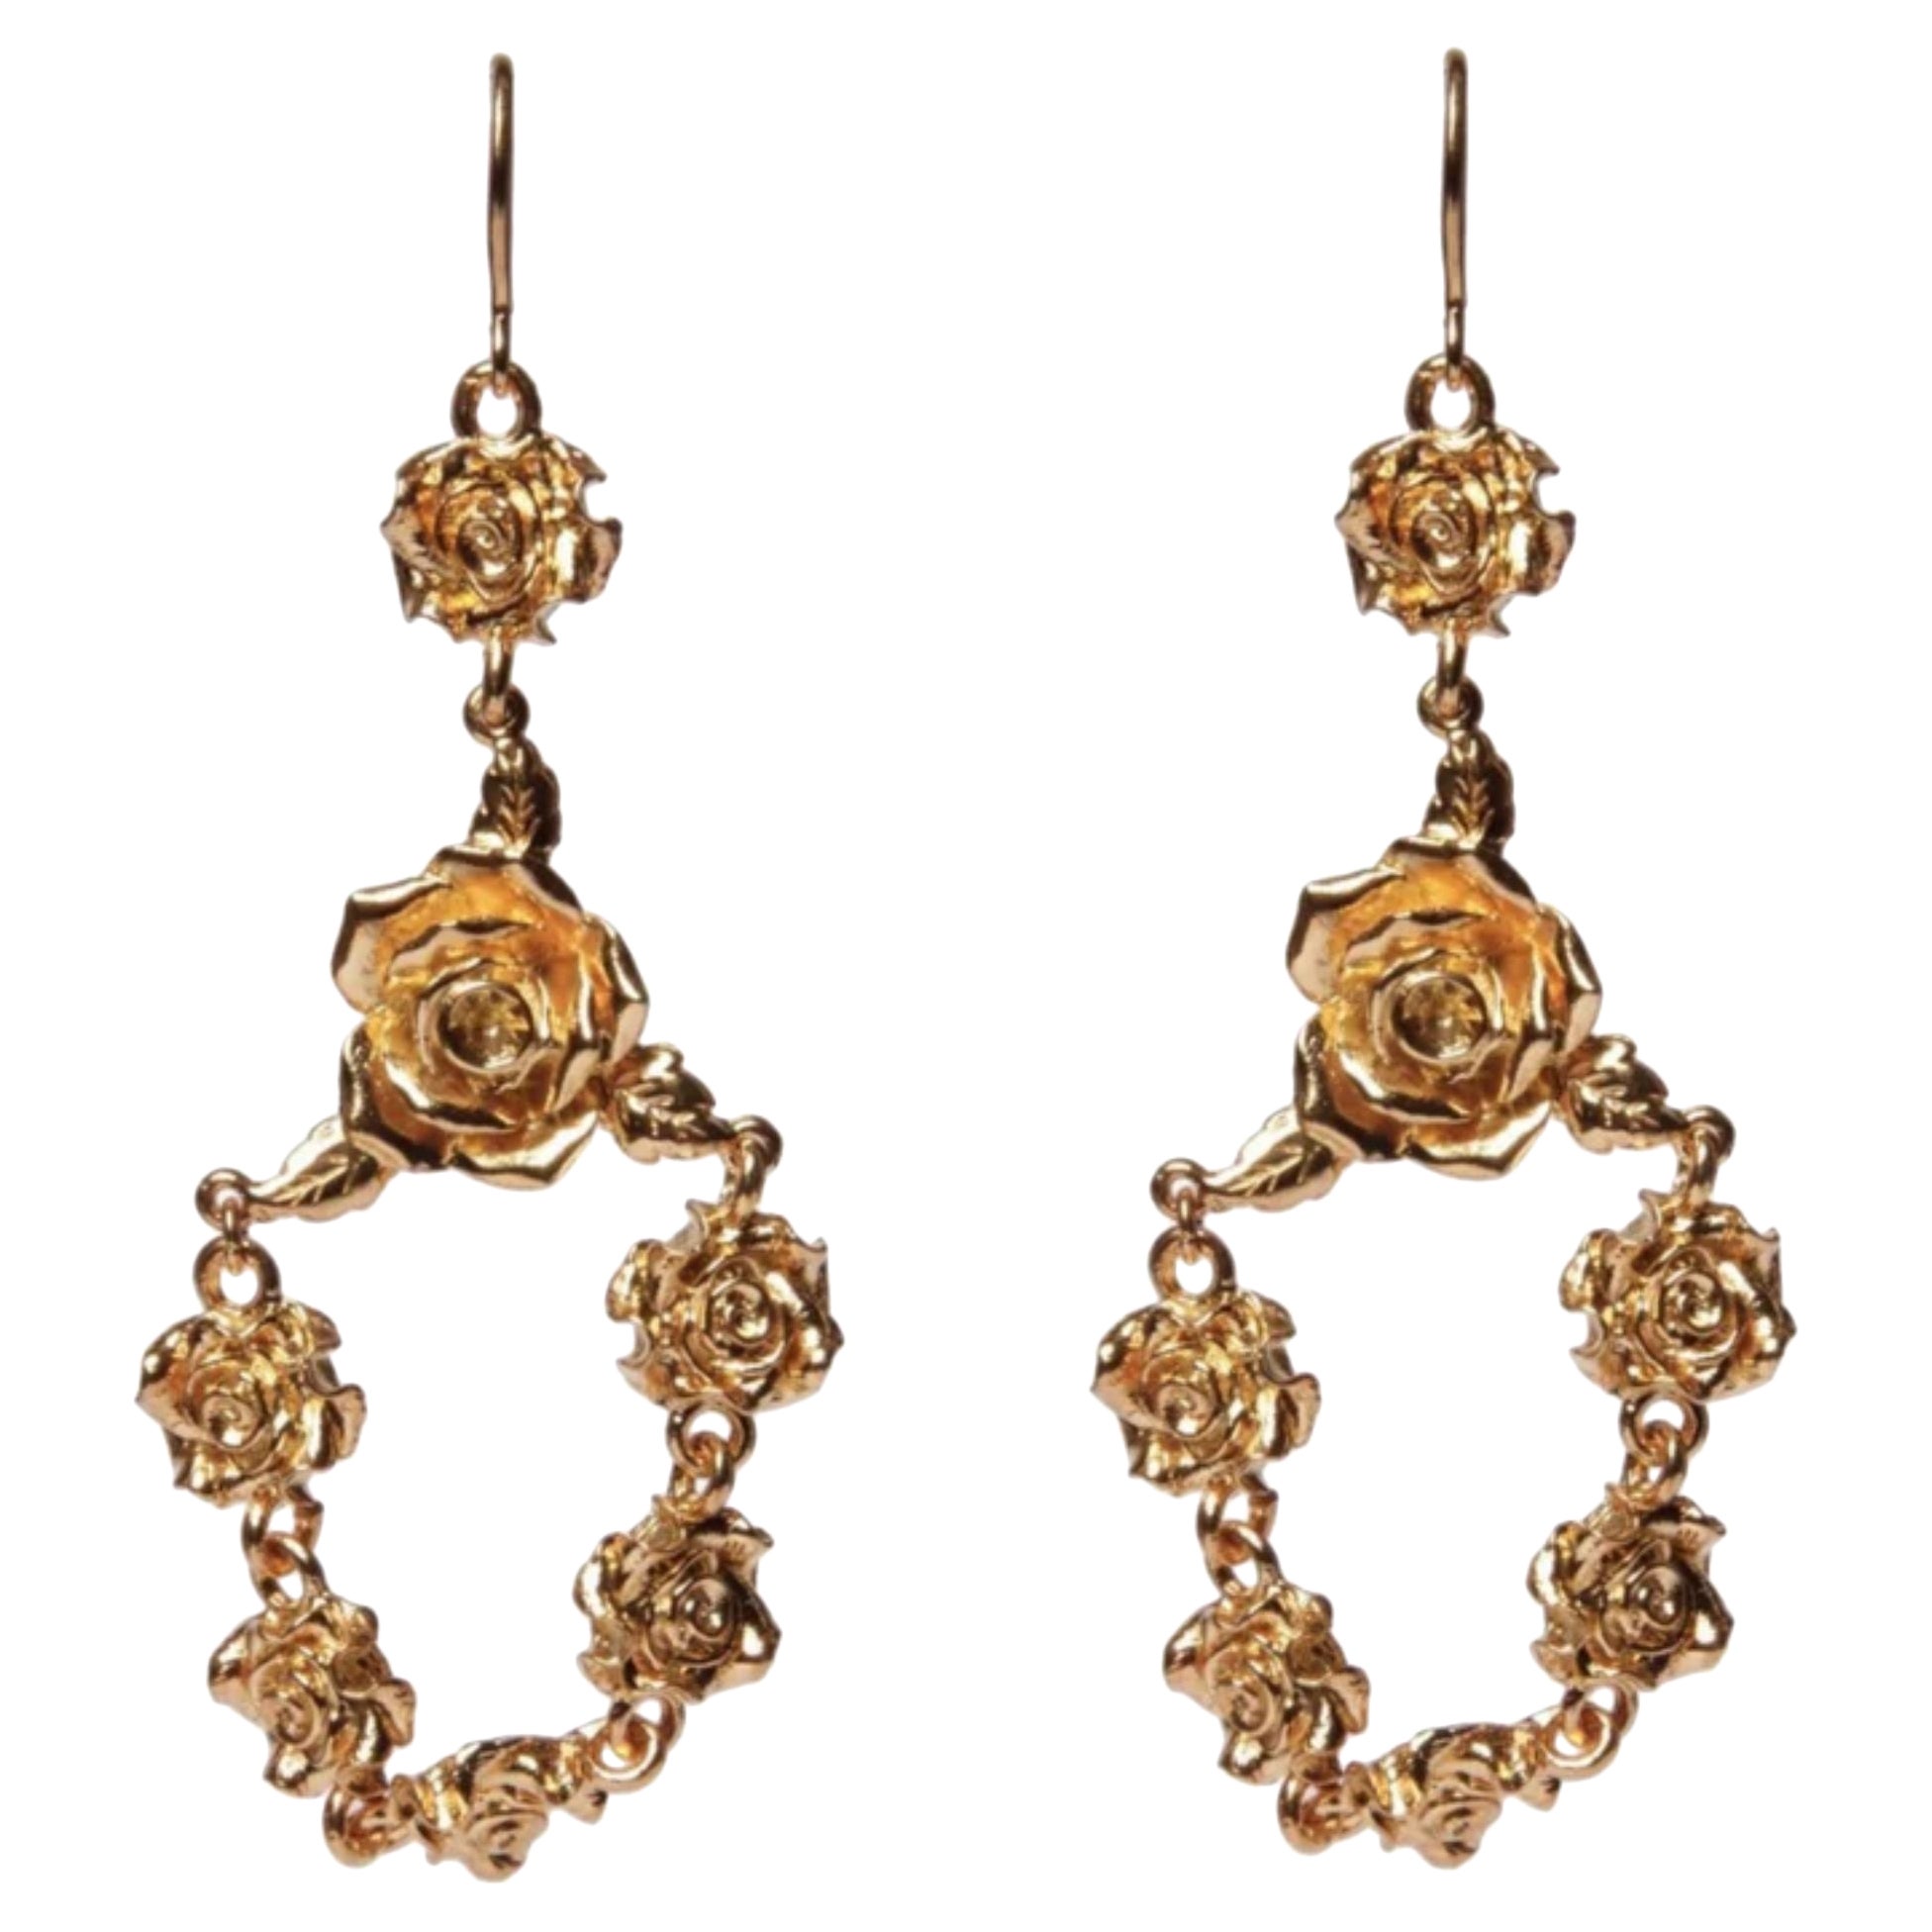 24K Gold Rosette Chandelier Earrings Plated on Brass For Sale